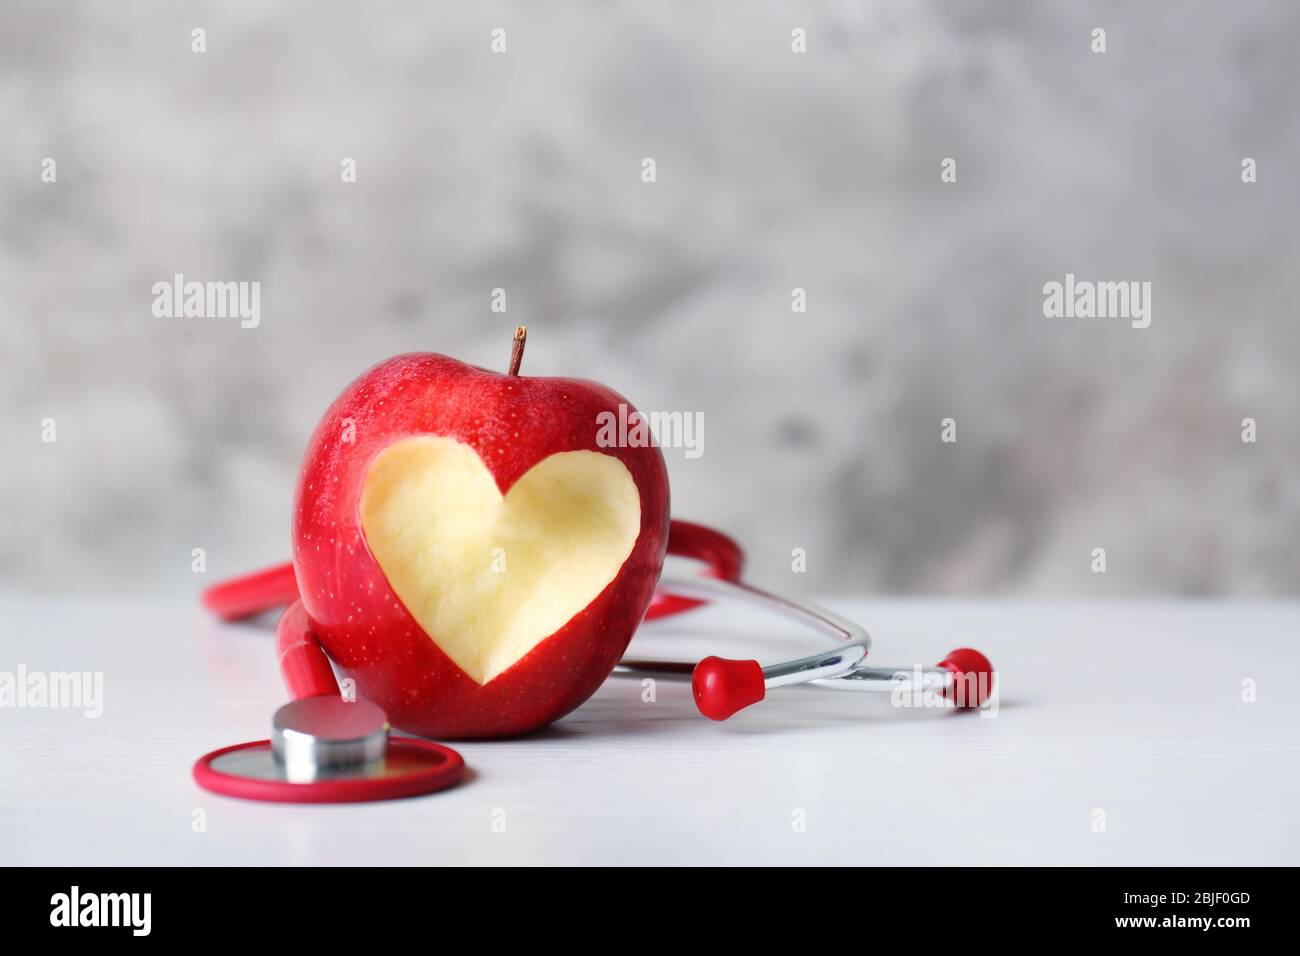 Apfel mit Stethoskop auf farbigem Hintergrund Stockfoto